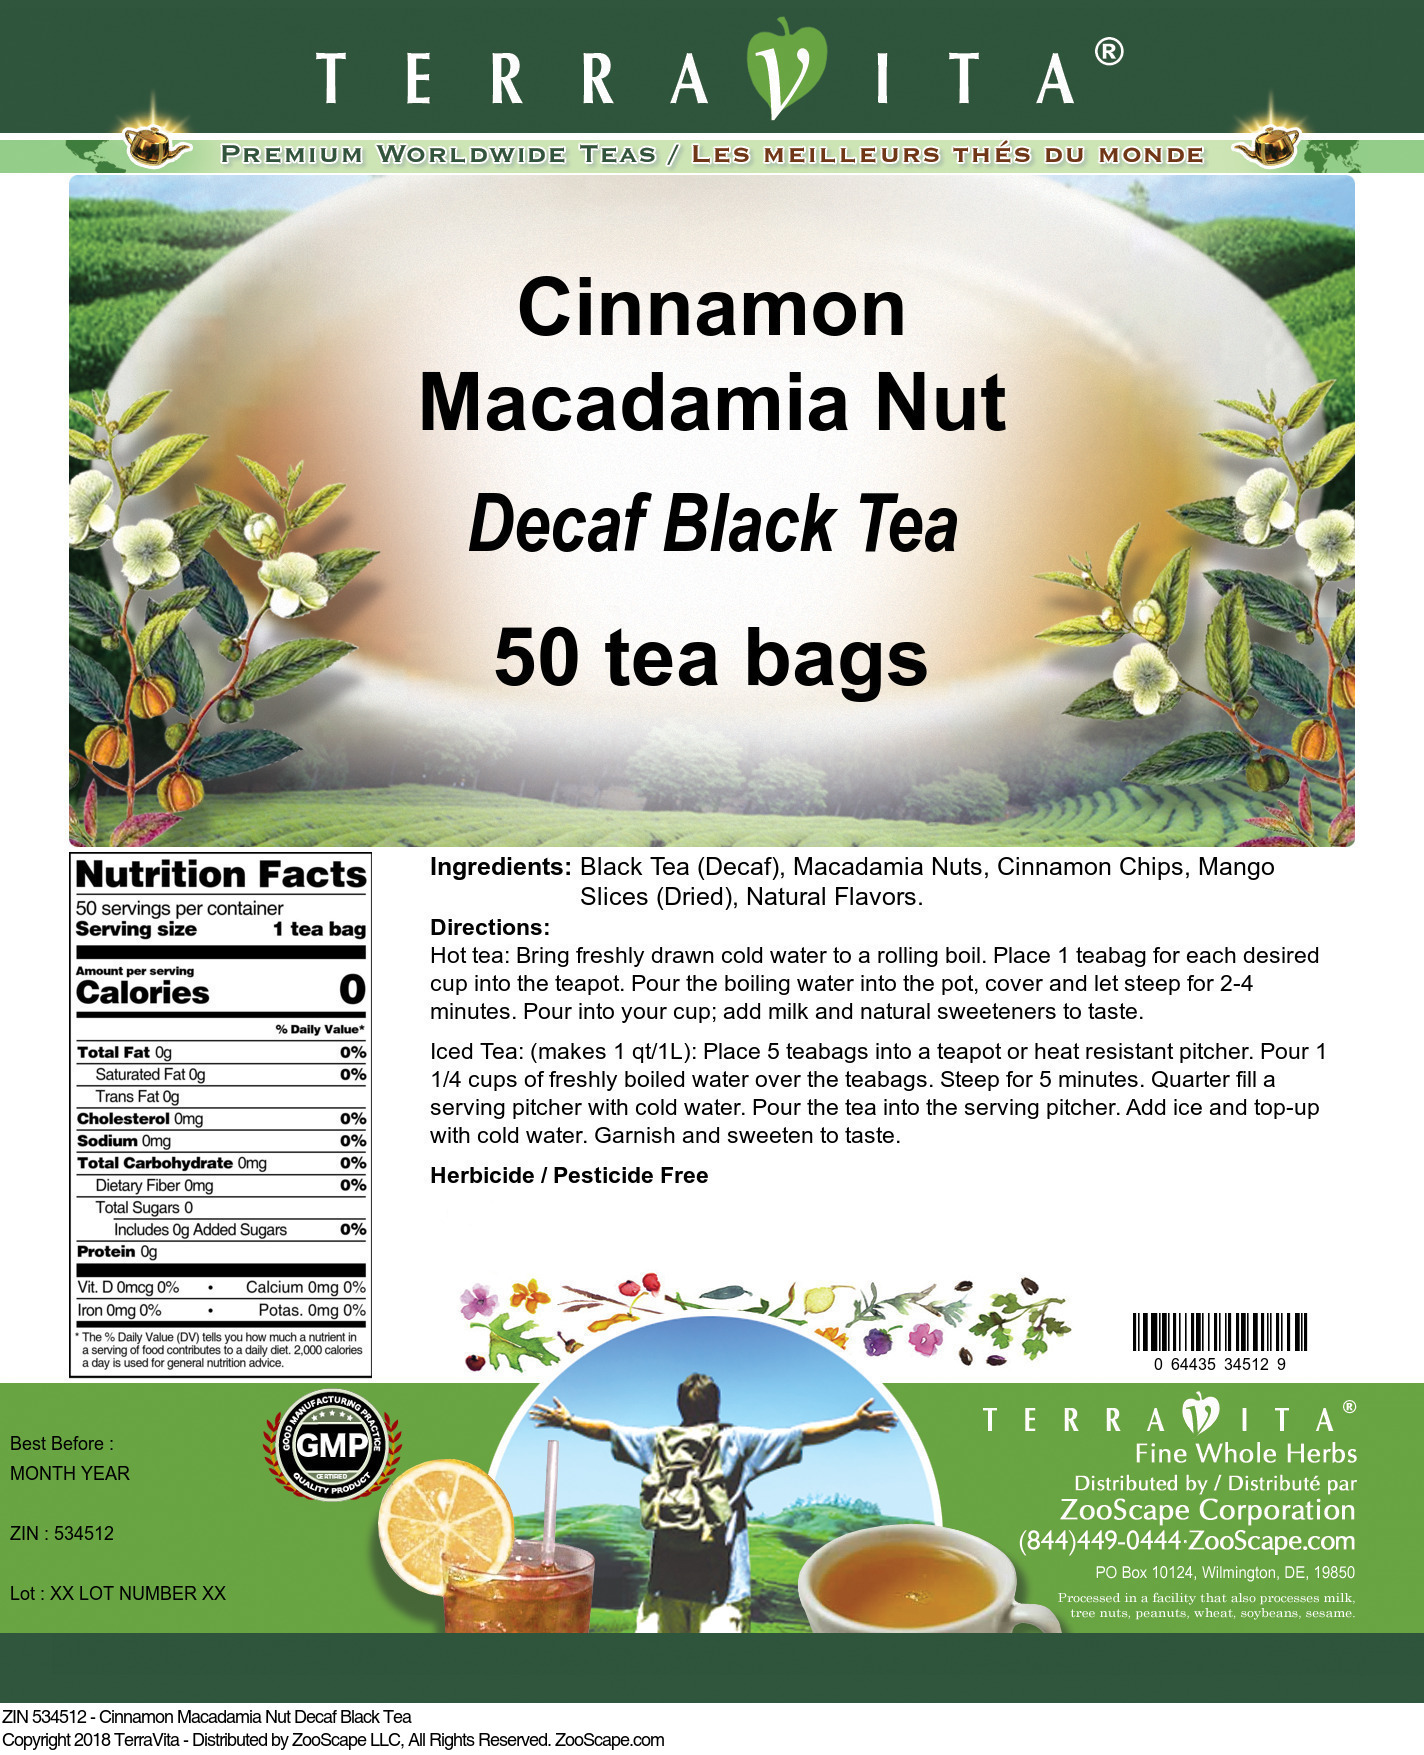 Cinnamon Macadamia Nut Decaf Black Tea - Label